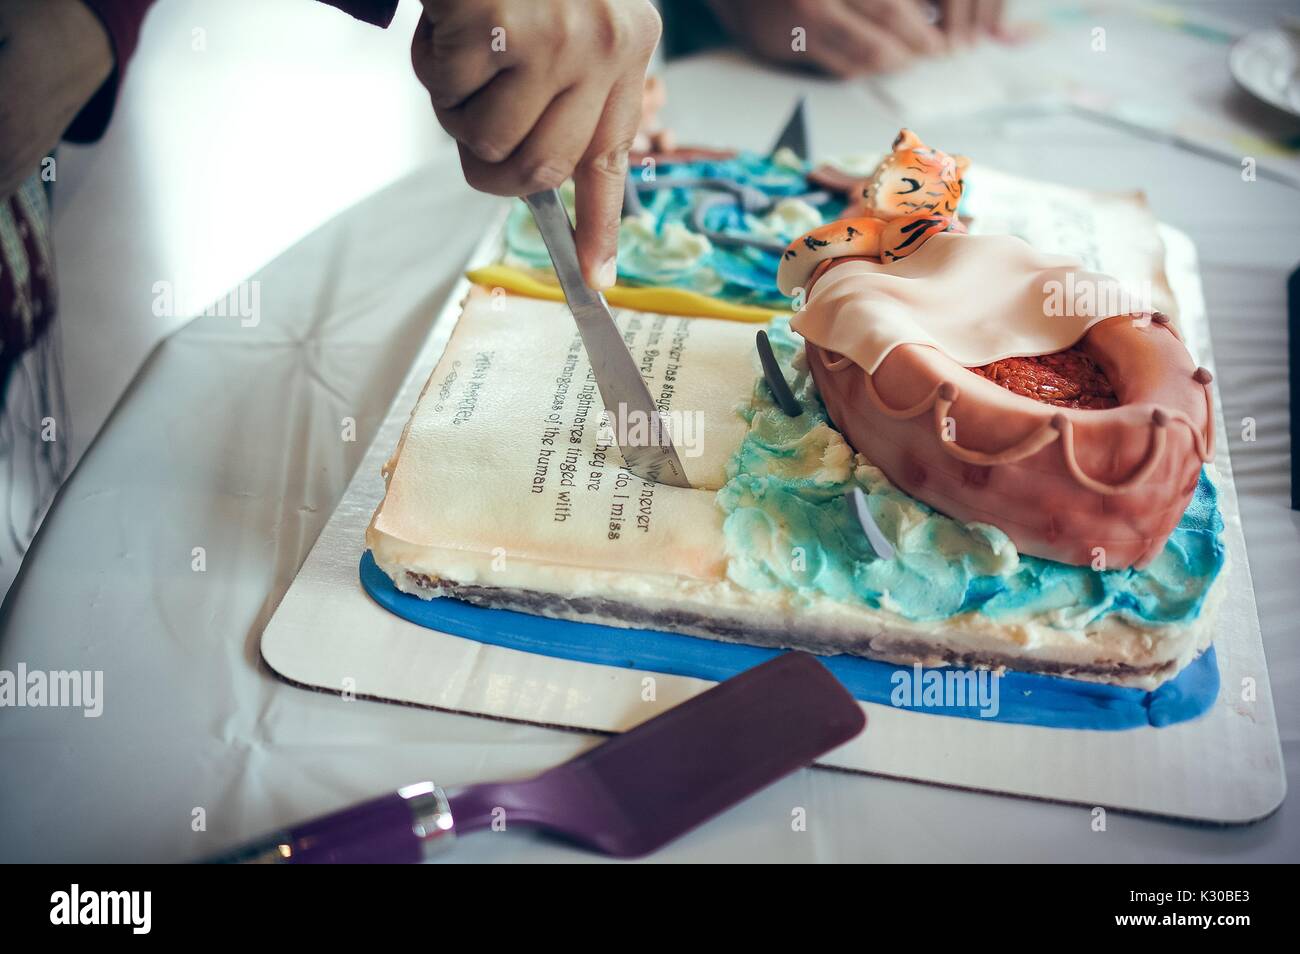 Life of Pi cake à la Johns Hopkins University's 'Lecture annuelle et le manger" Festival du livre sur les comestibles Homewood campus à Baltimore, Maryland, Mars, 2016. Avec la permission de Eric Chen. Banque D'Images